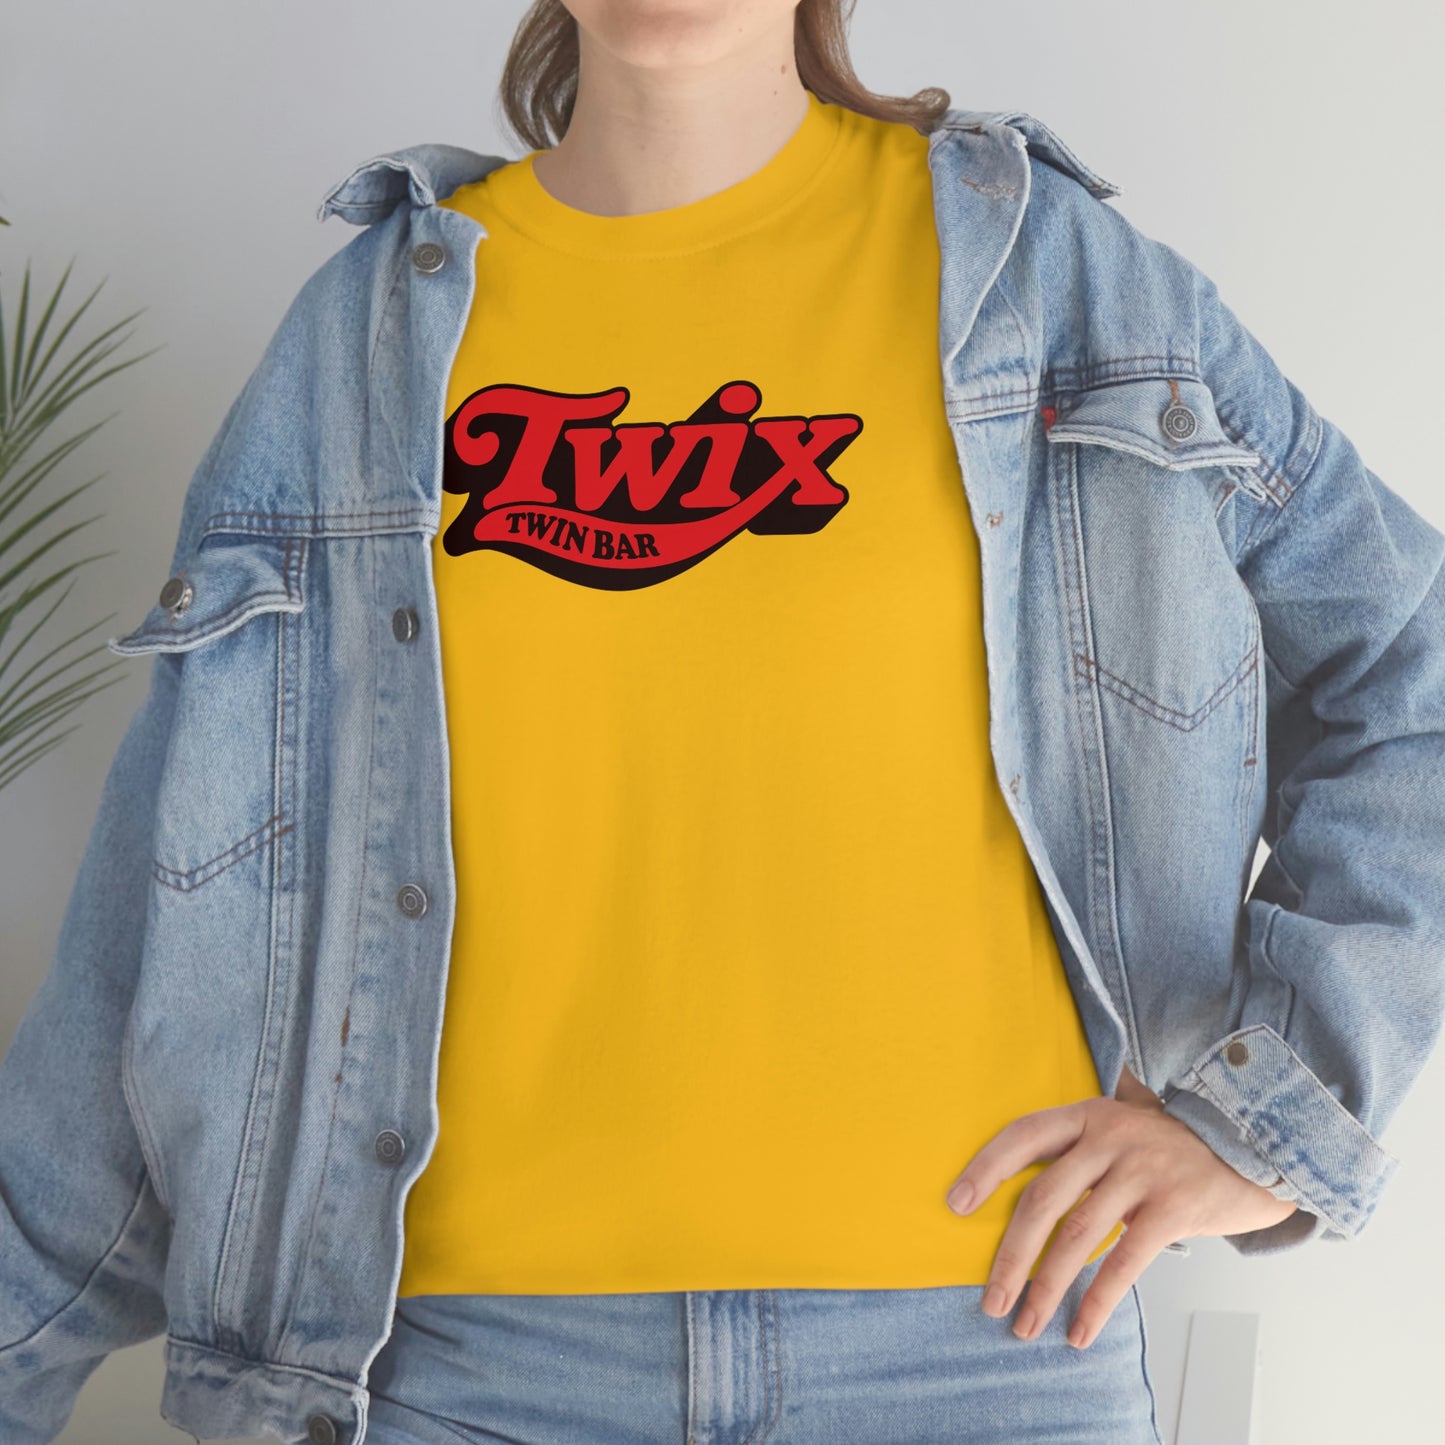 Twix T-Shirt